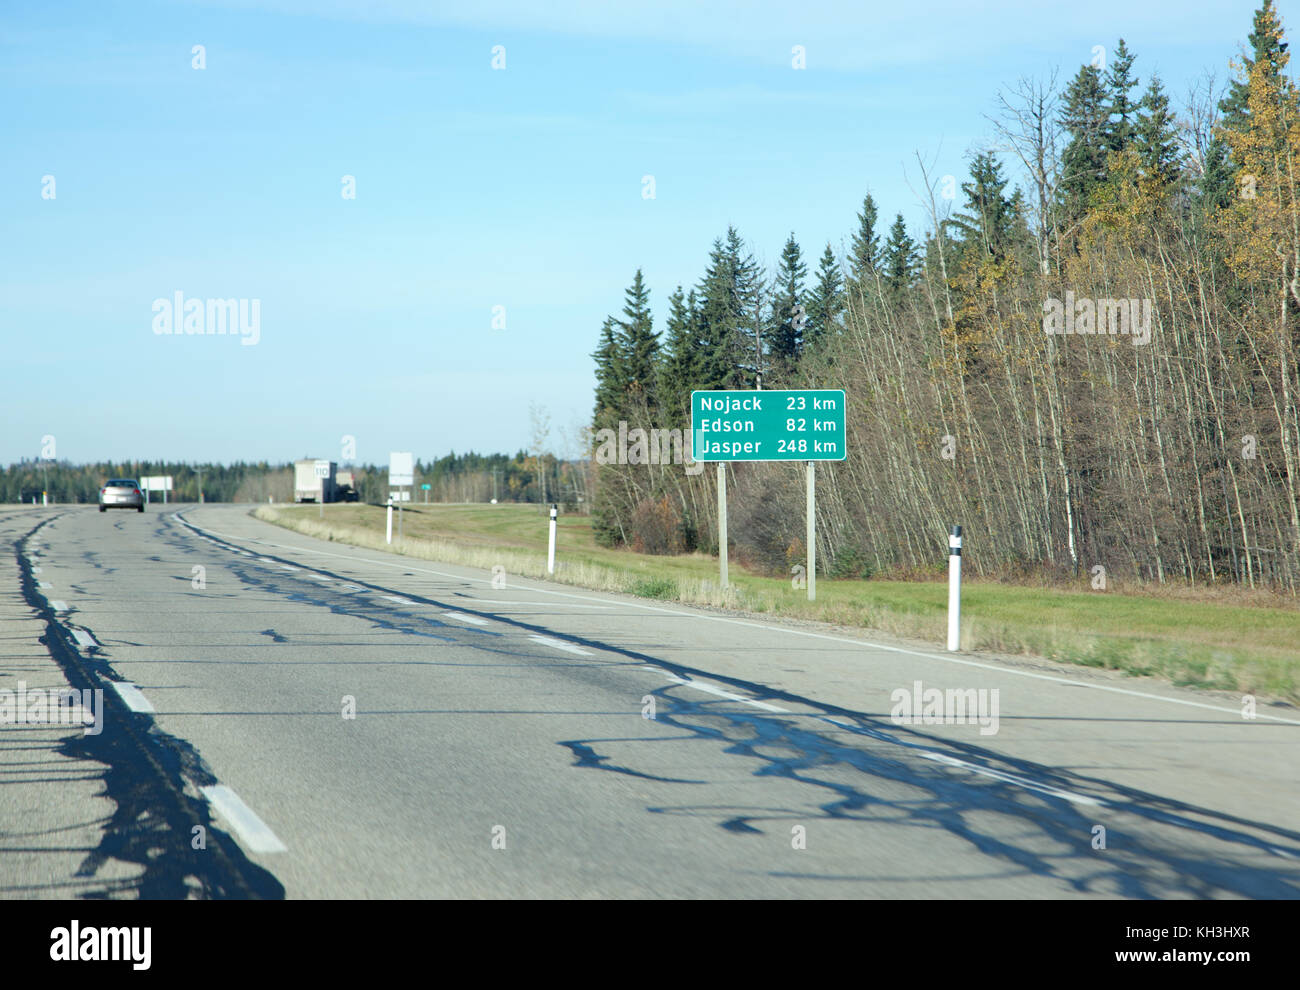 Un verde autostrada segno sulla Trans Canada in Alberta mostra chilometri til jasper, edson e nojack Foto Stock